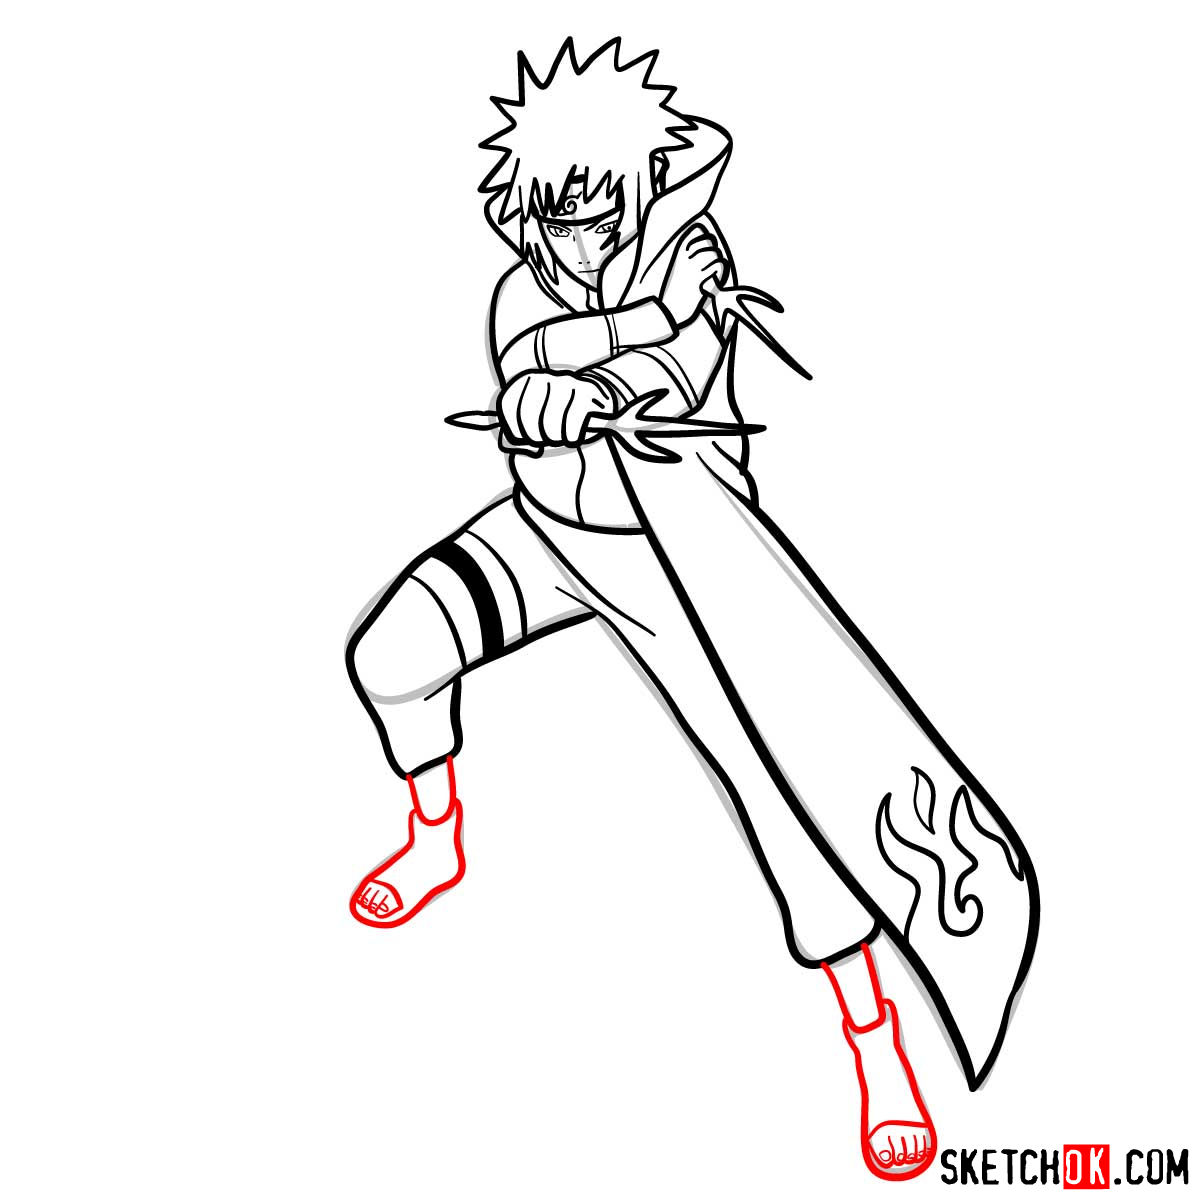 How to draw Minato Namikaze from Naruto anime - step 14